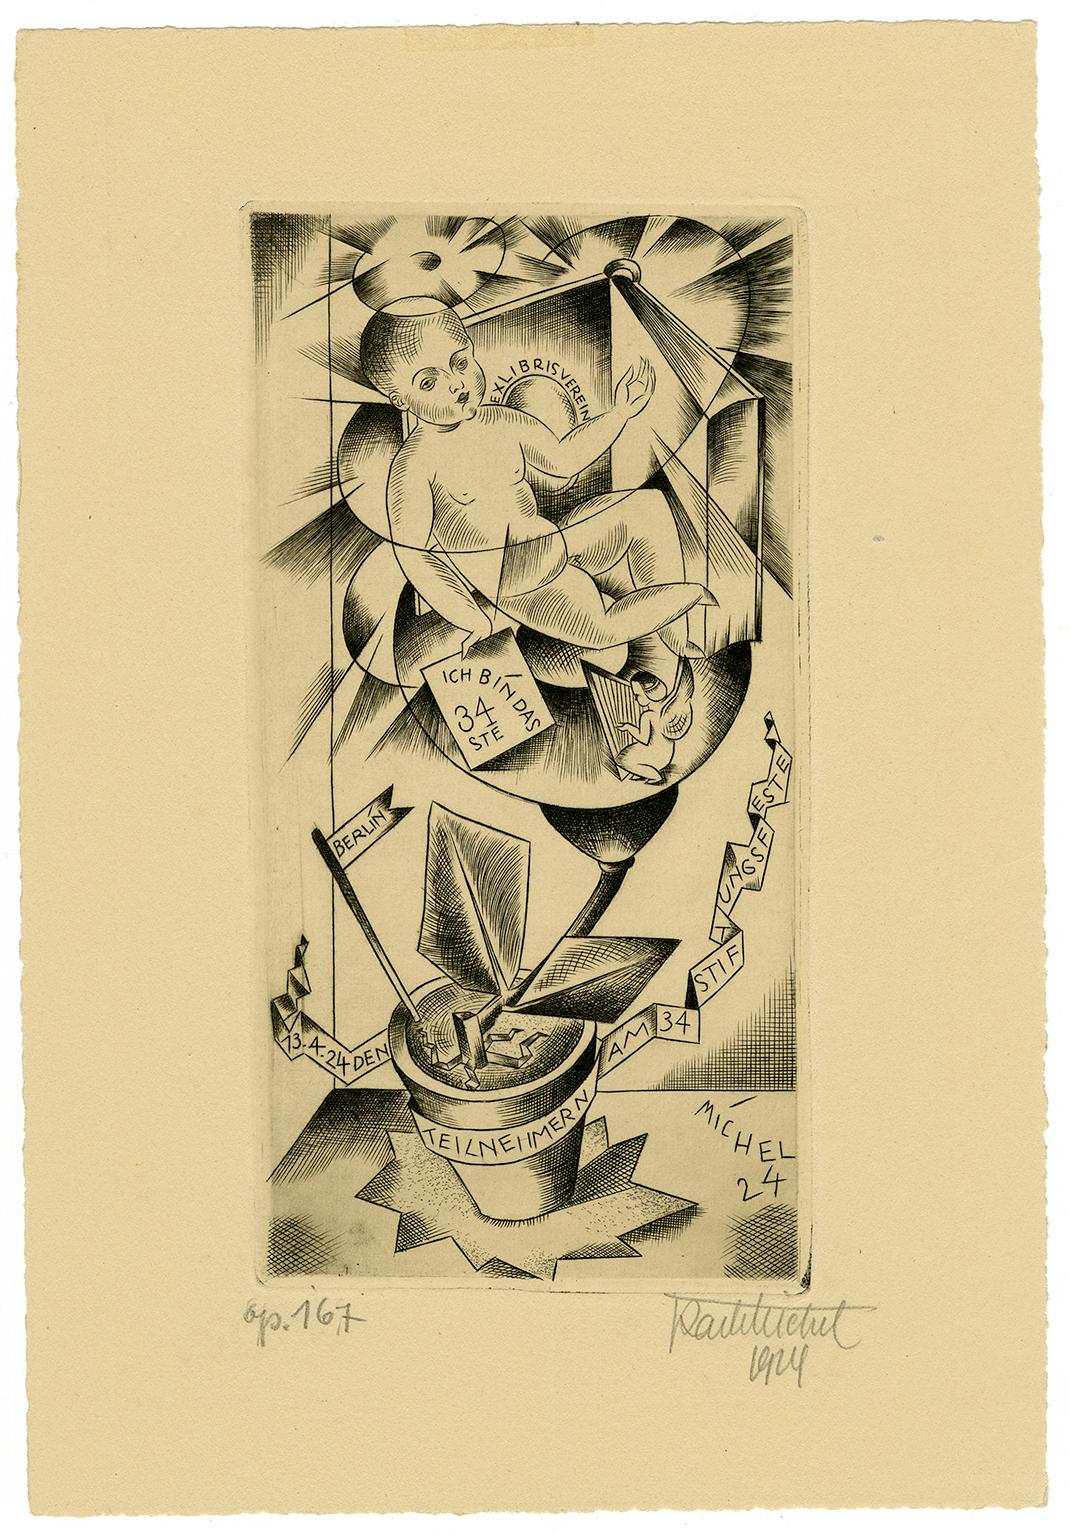 'Ex Libris Verein' — 1920s German Expressionism - Print by Karl Michel